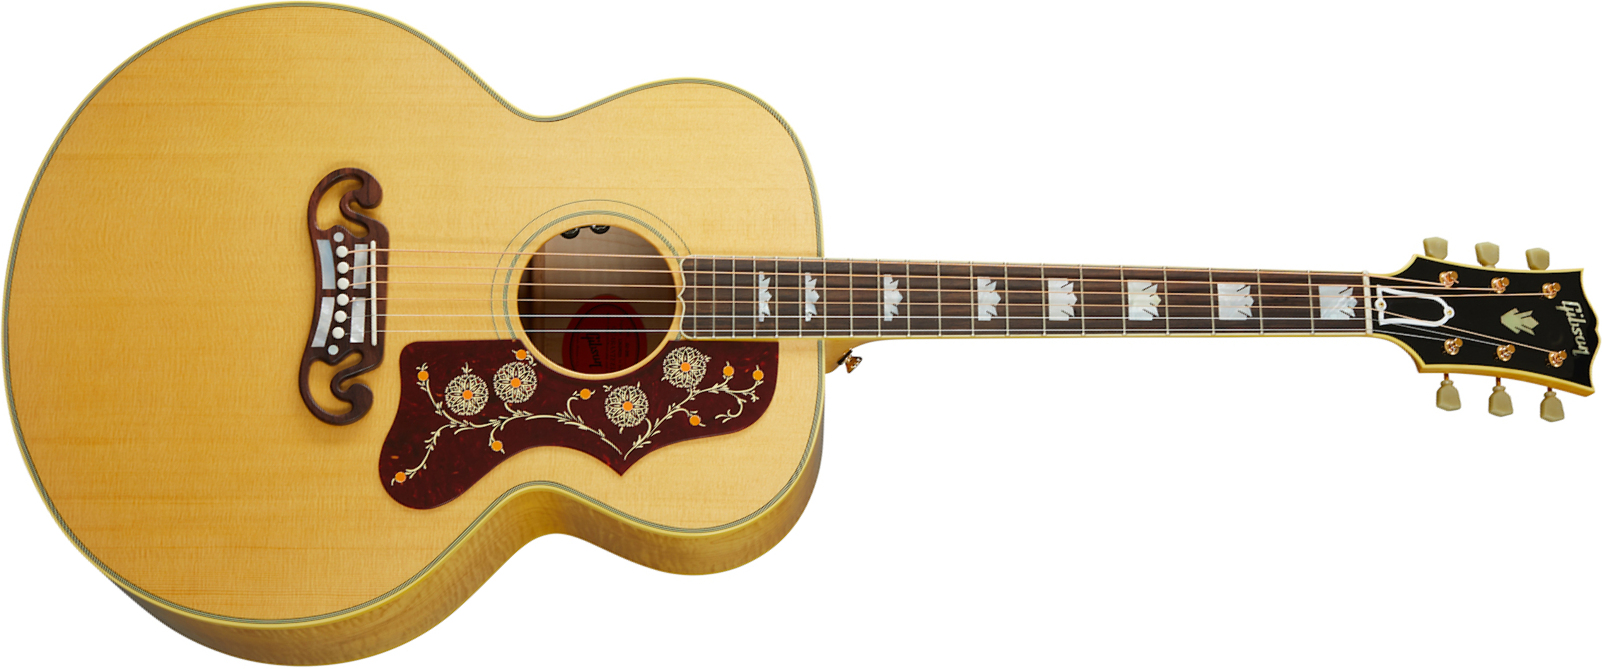 Gibson Sj-200 Original 2020 Super Jumbo Epicea Erable Rw - Antique Natural - Elektroakustische Gitarre - Main picture